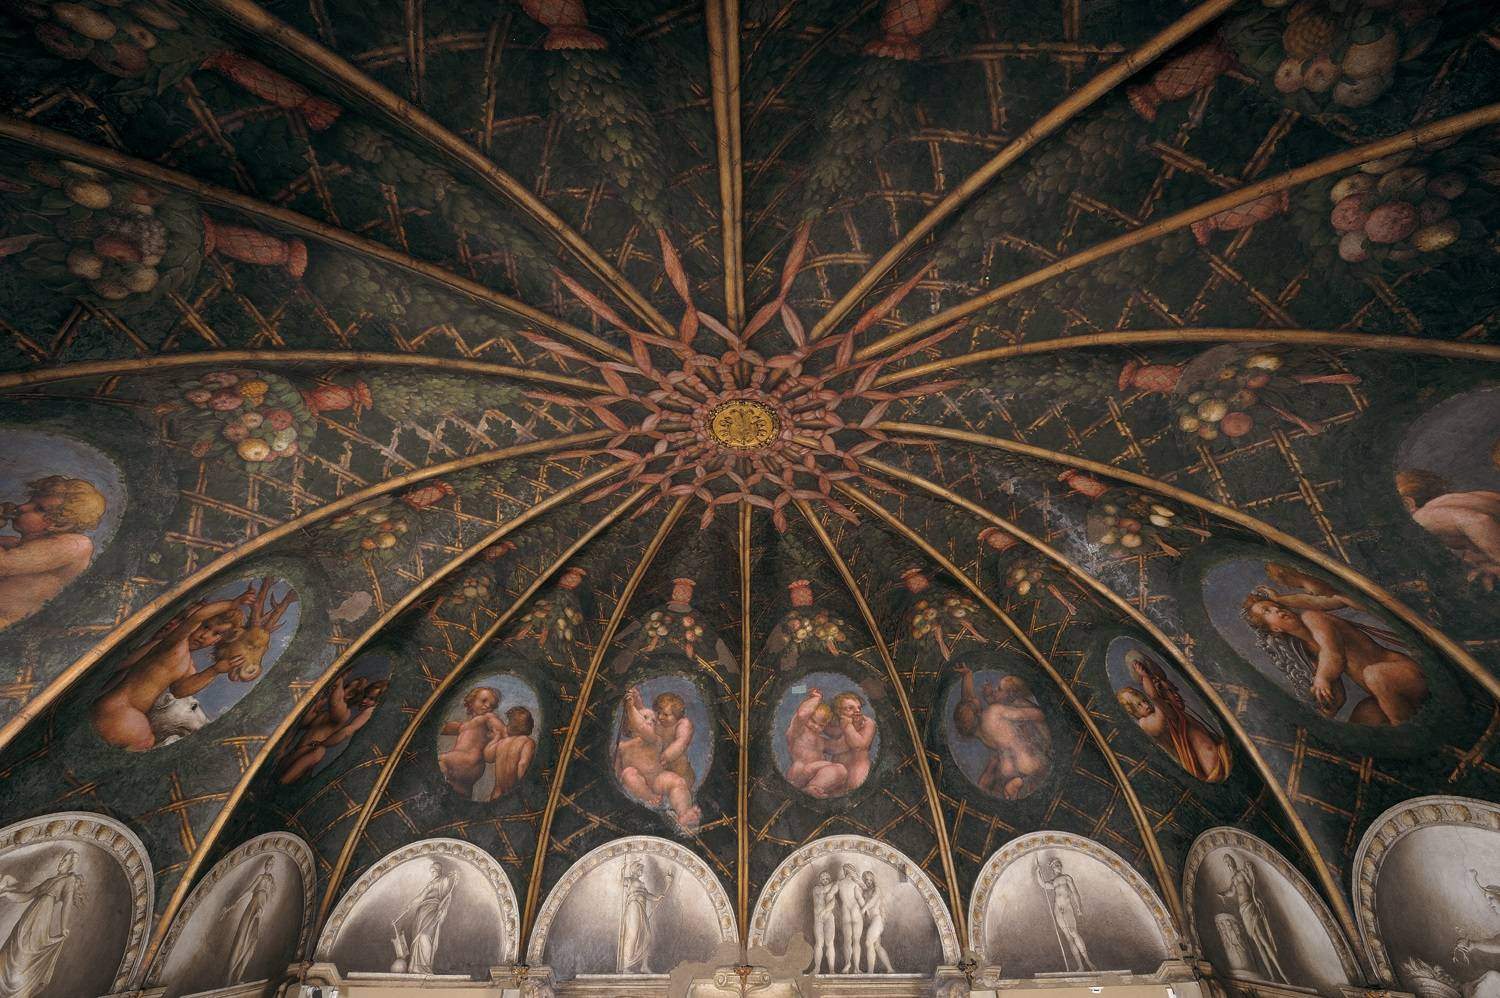 An exhibition in Correggio celebrates the 500th anniversary of the Abbess Chamber, Correggio's masterpiece